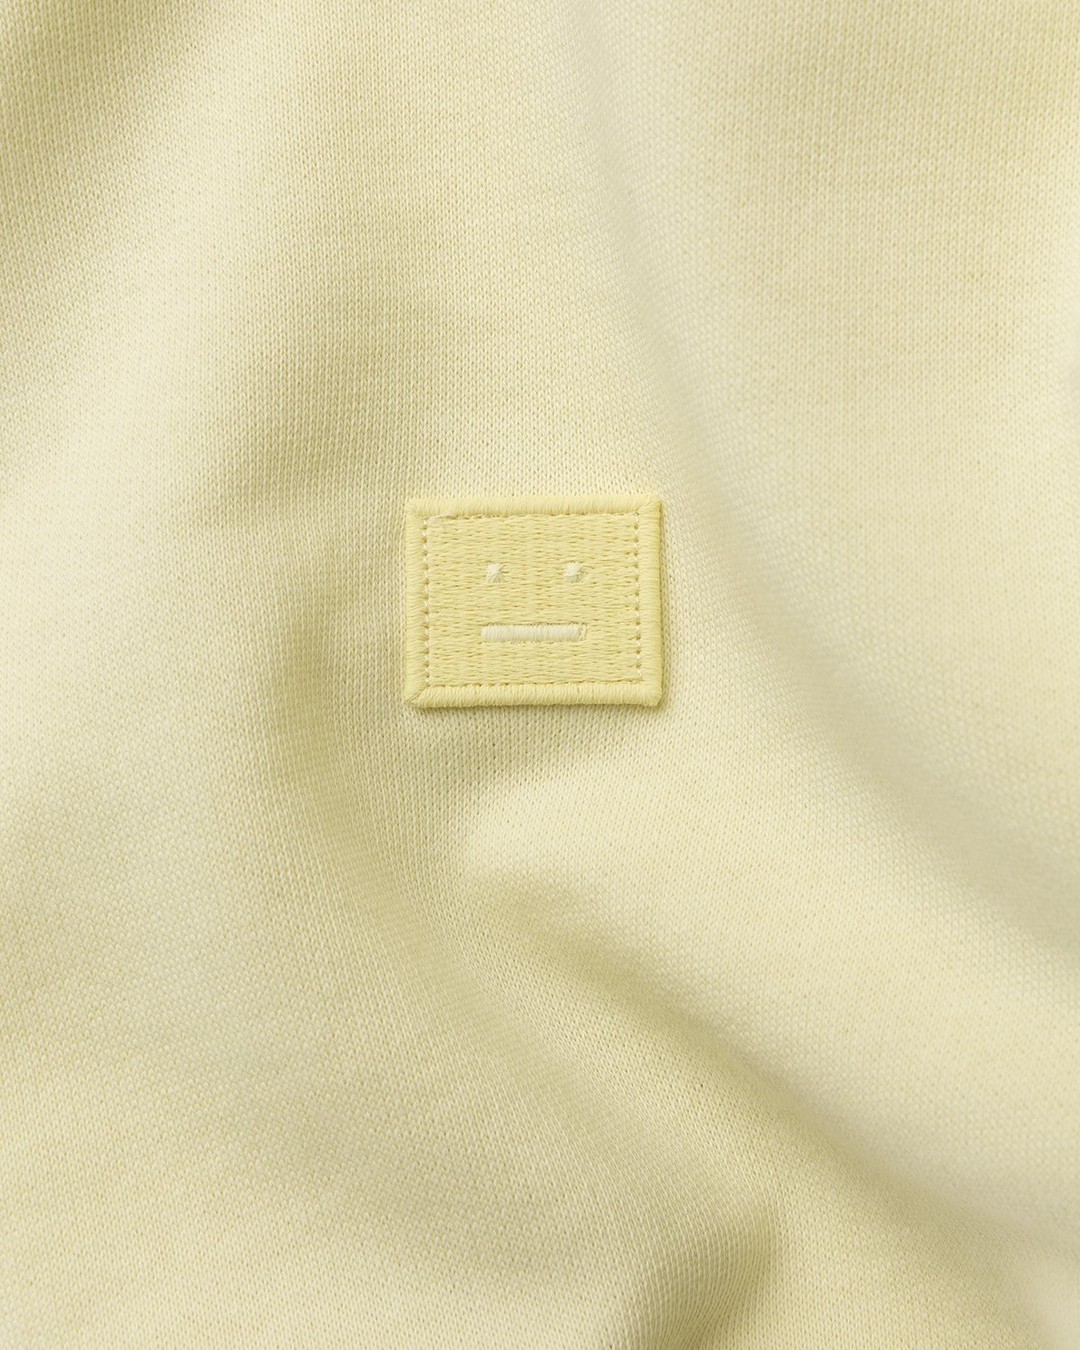 Acne Studios – Organic Cotton Hooded Sweatshirt Vanilla Yellow - Sweats - Yellow - Image 4